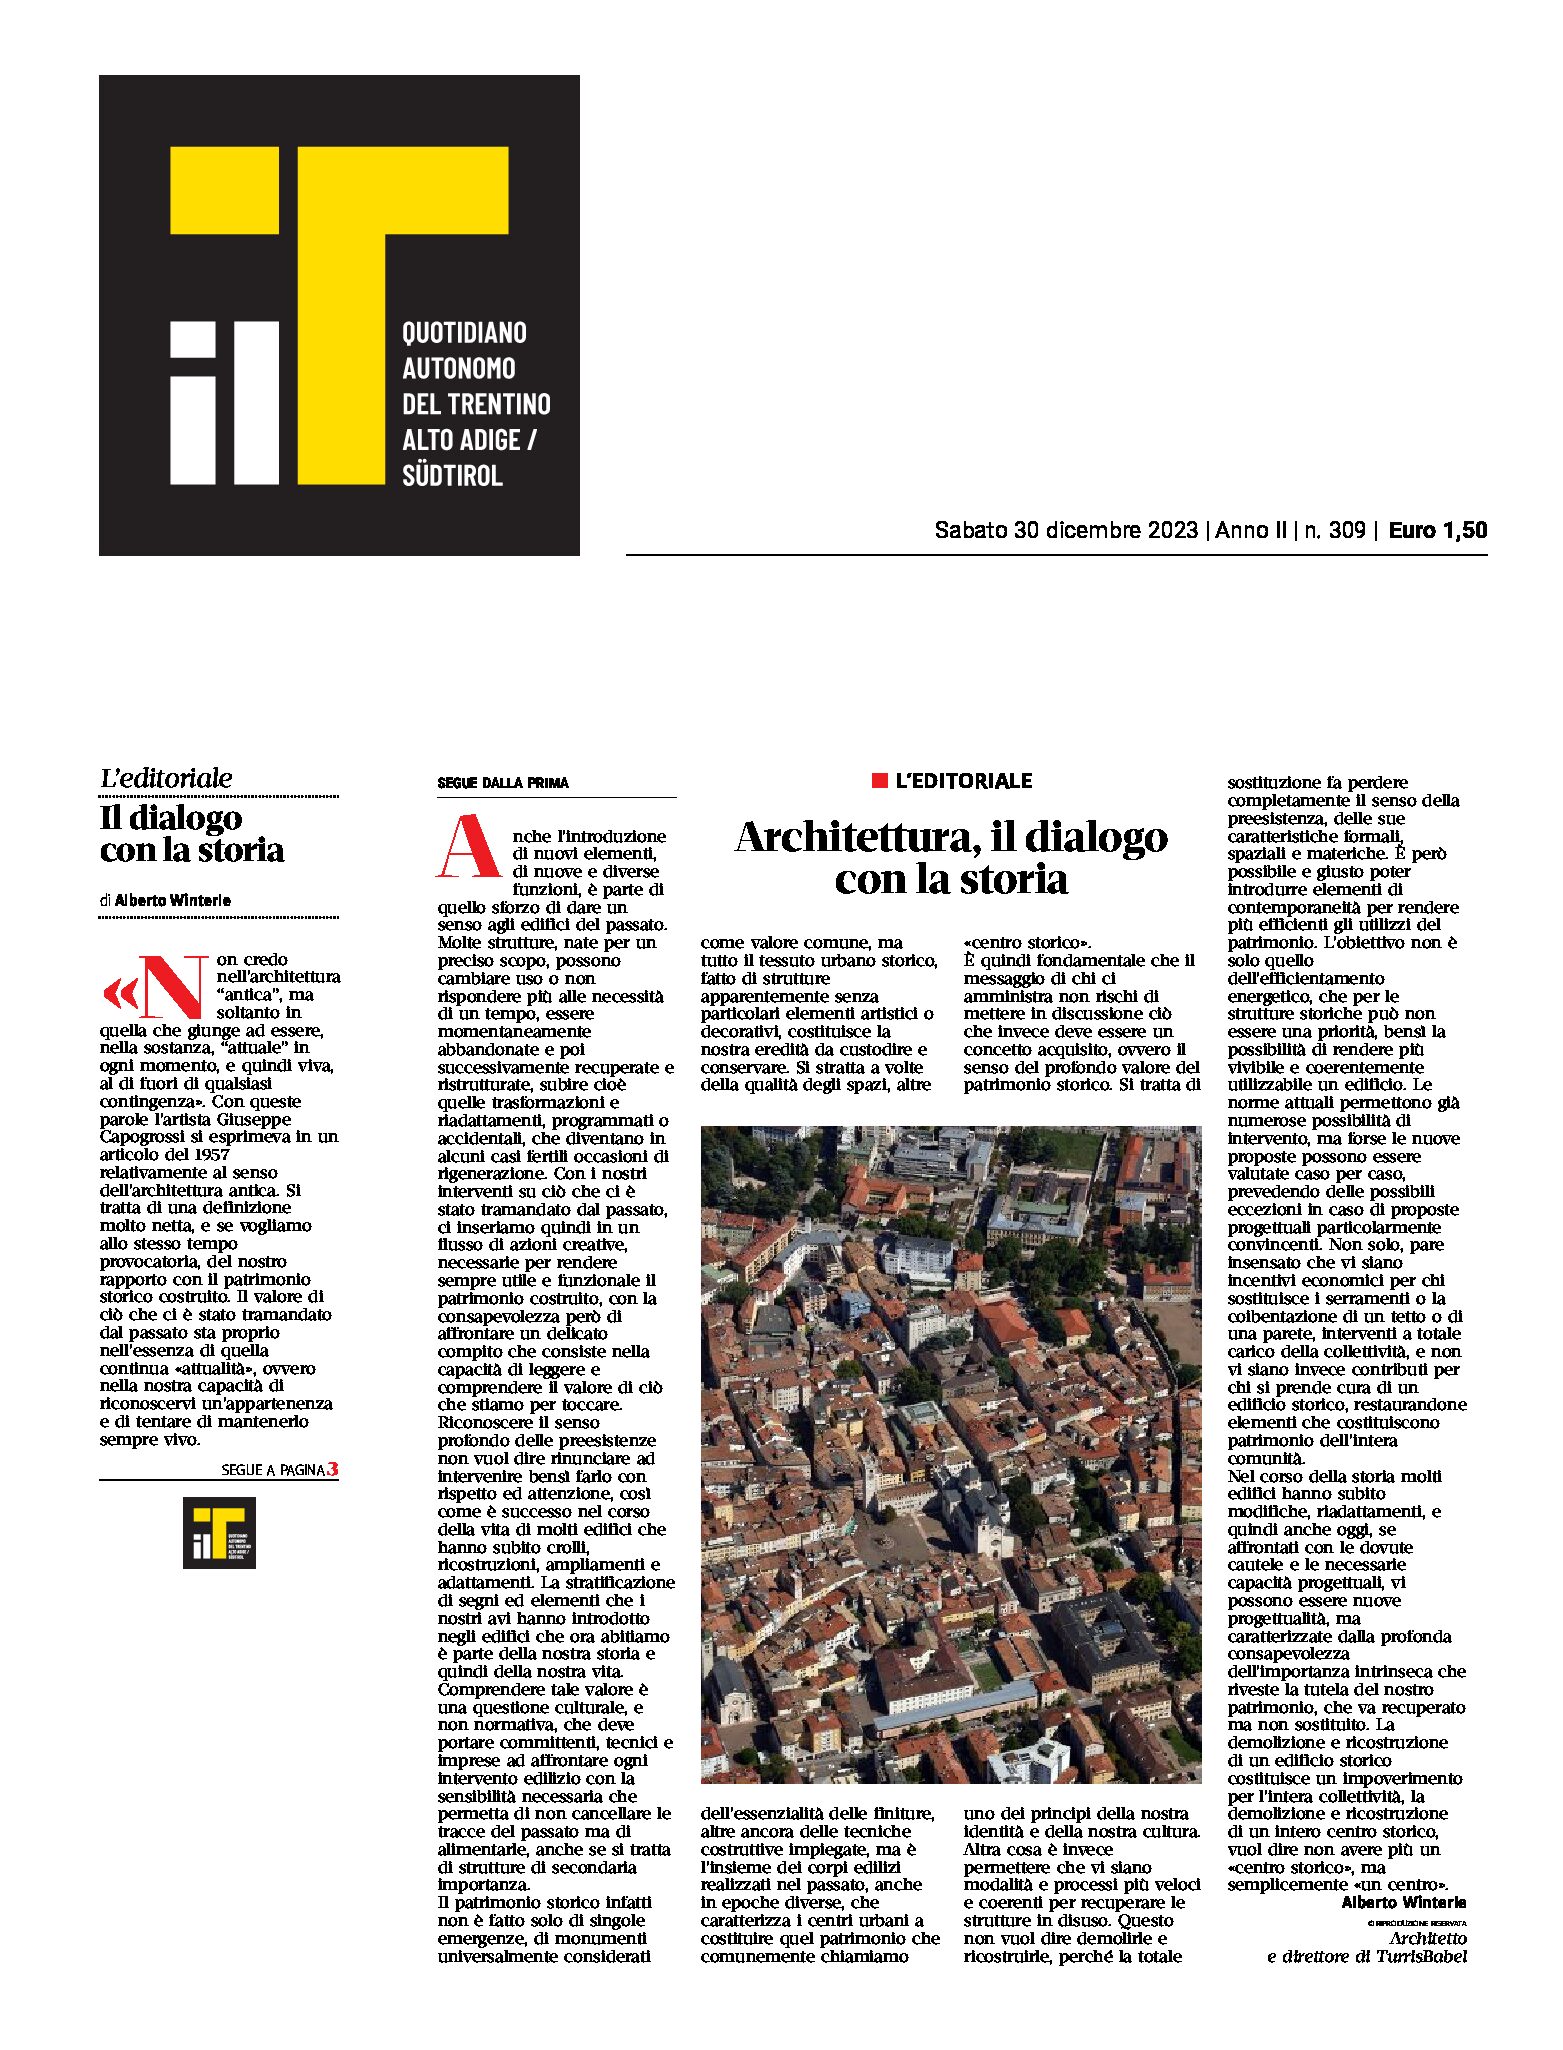 Architettura, il dialogo con la storia. Editoriale di Alberto Winterle